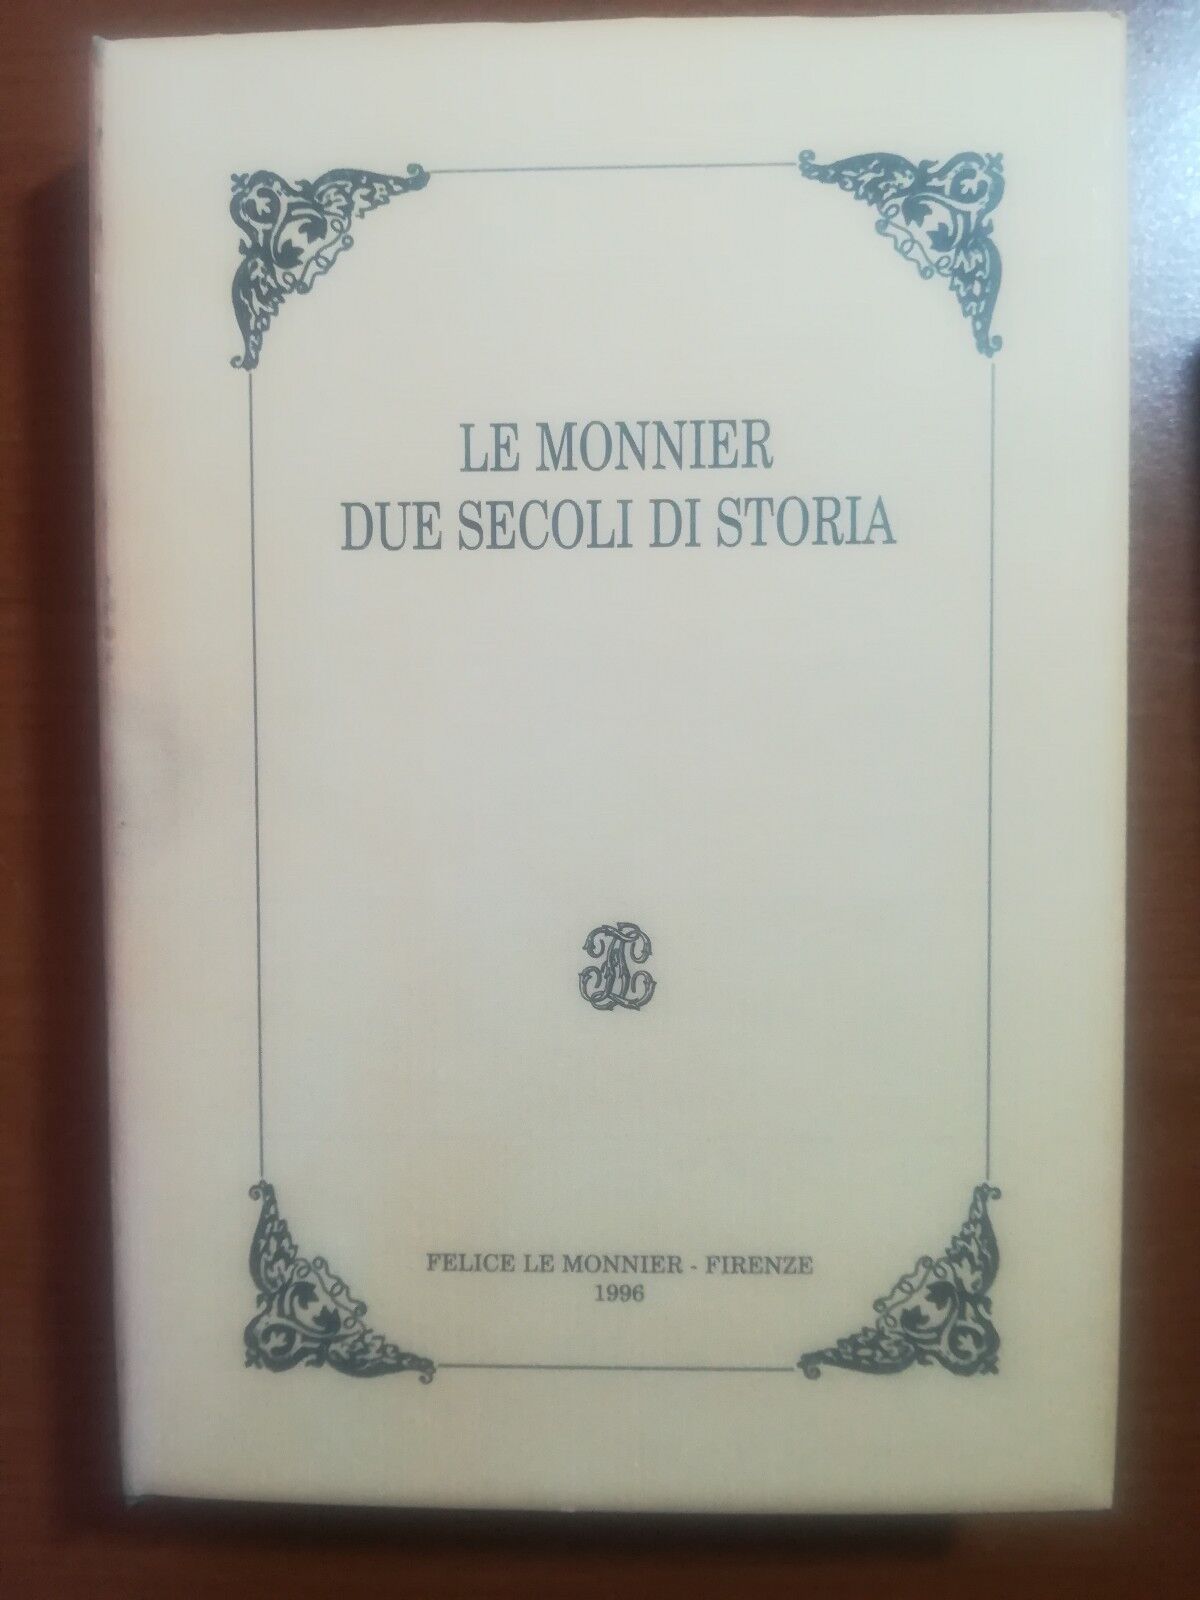 Due secoli  di storia - Le Monnier - Le Monnier - 1996 - M